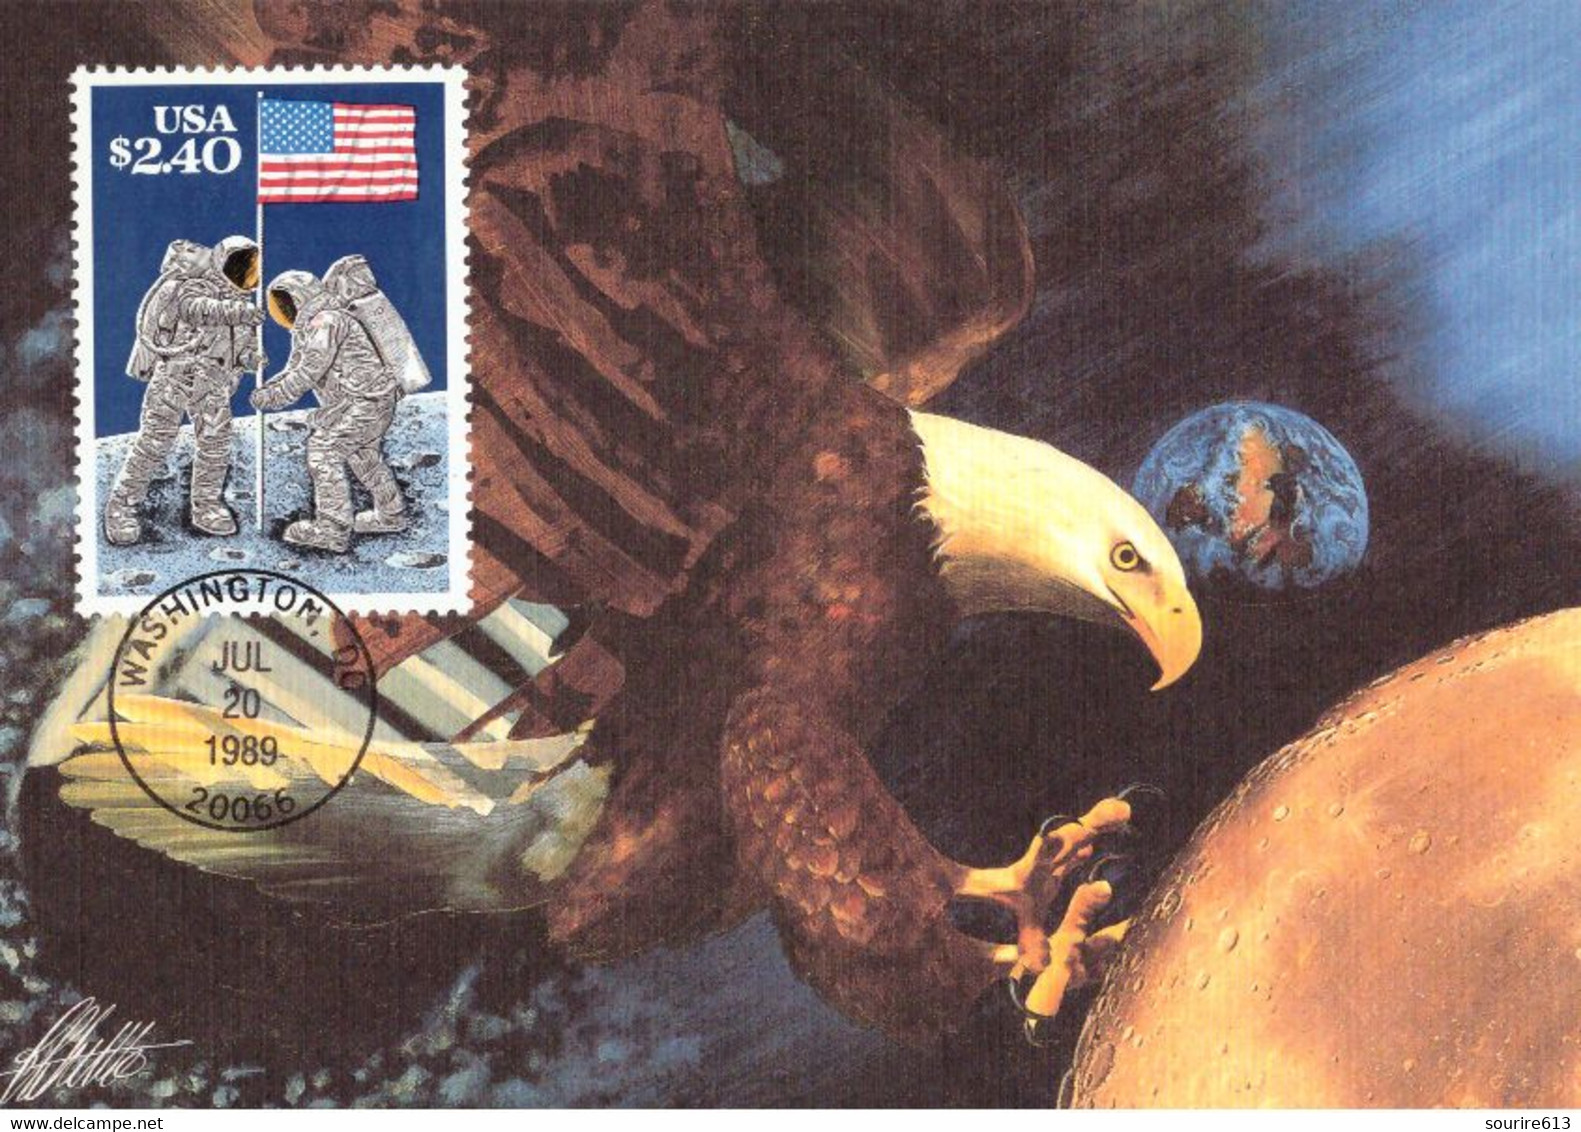 CM Usa 1989 First Moon Landing 1969 Premier Pas Sur La Lune - América Del Norte